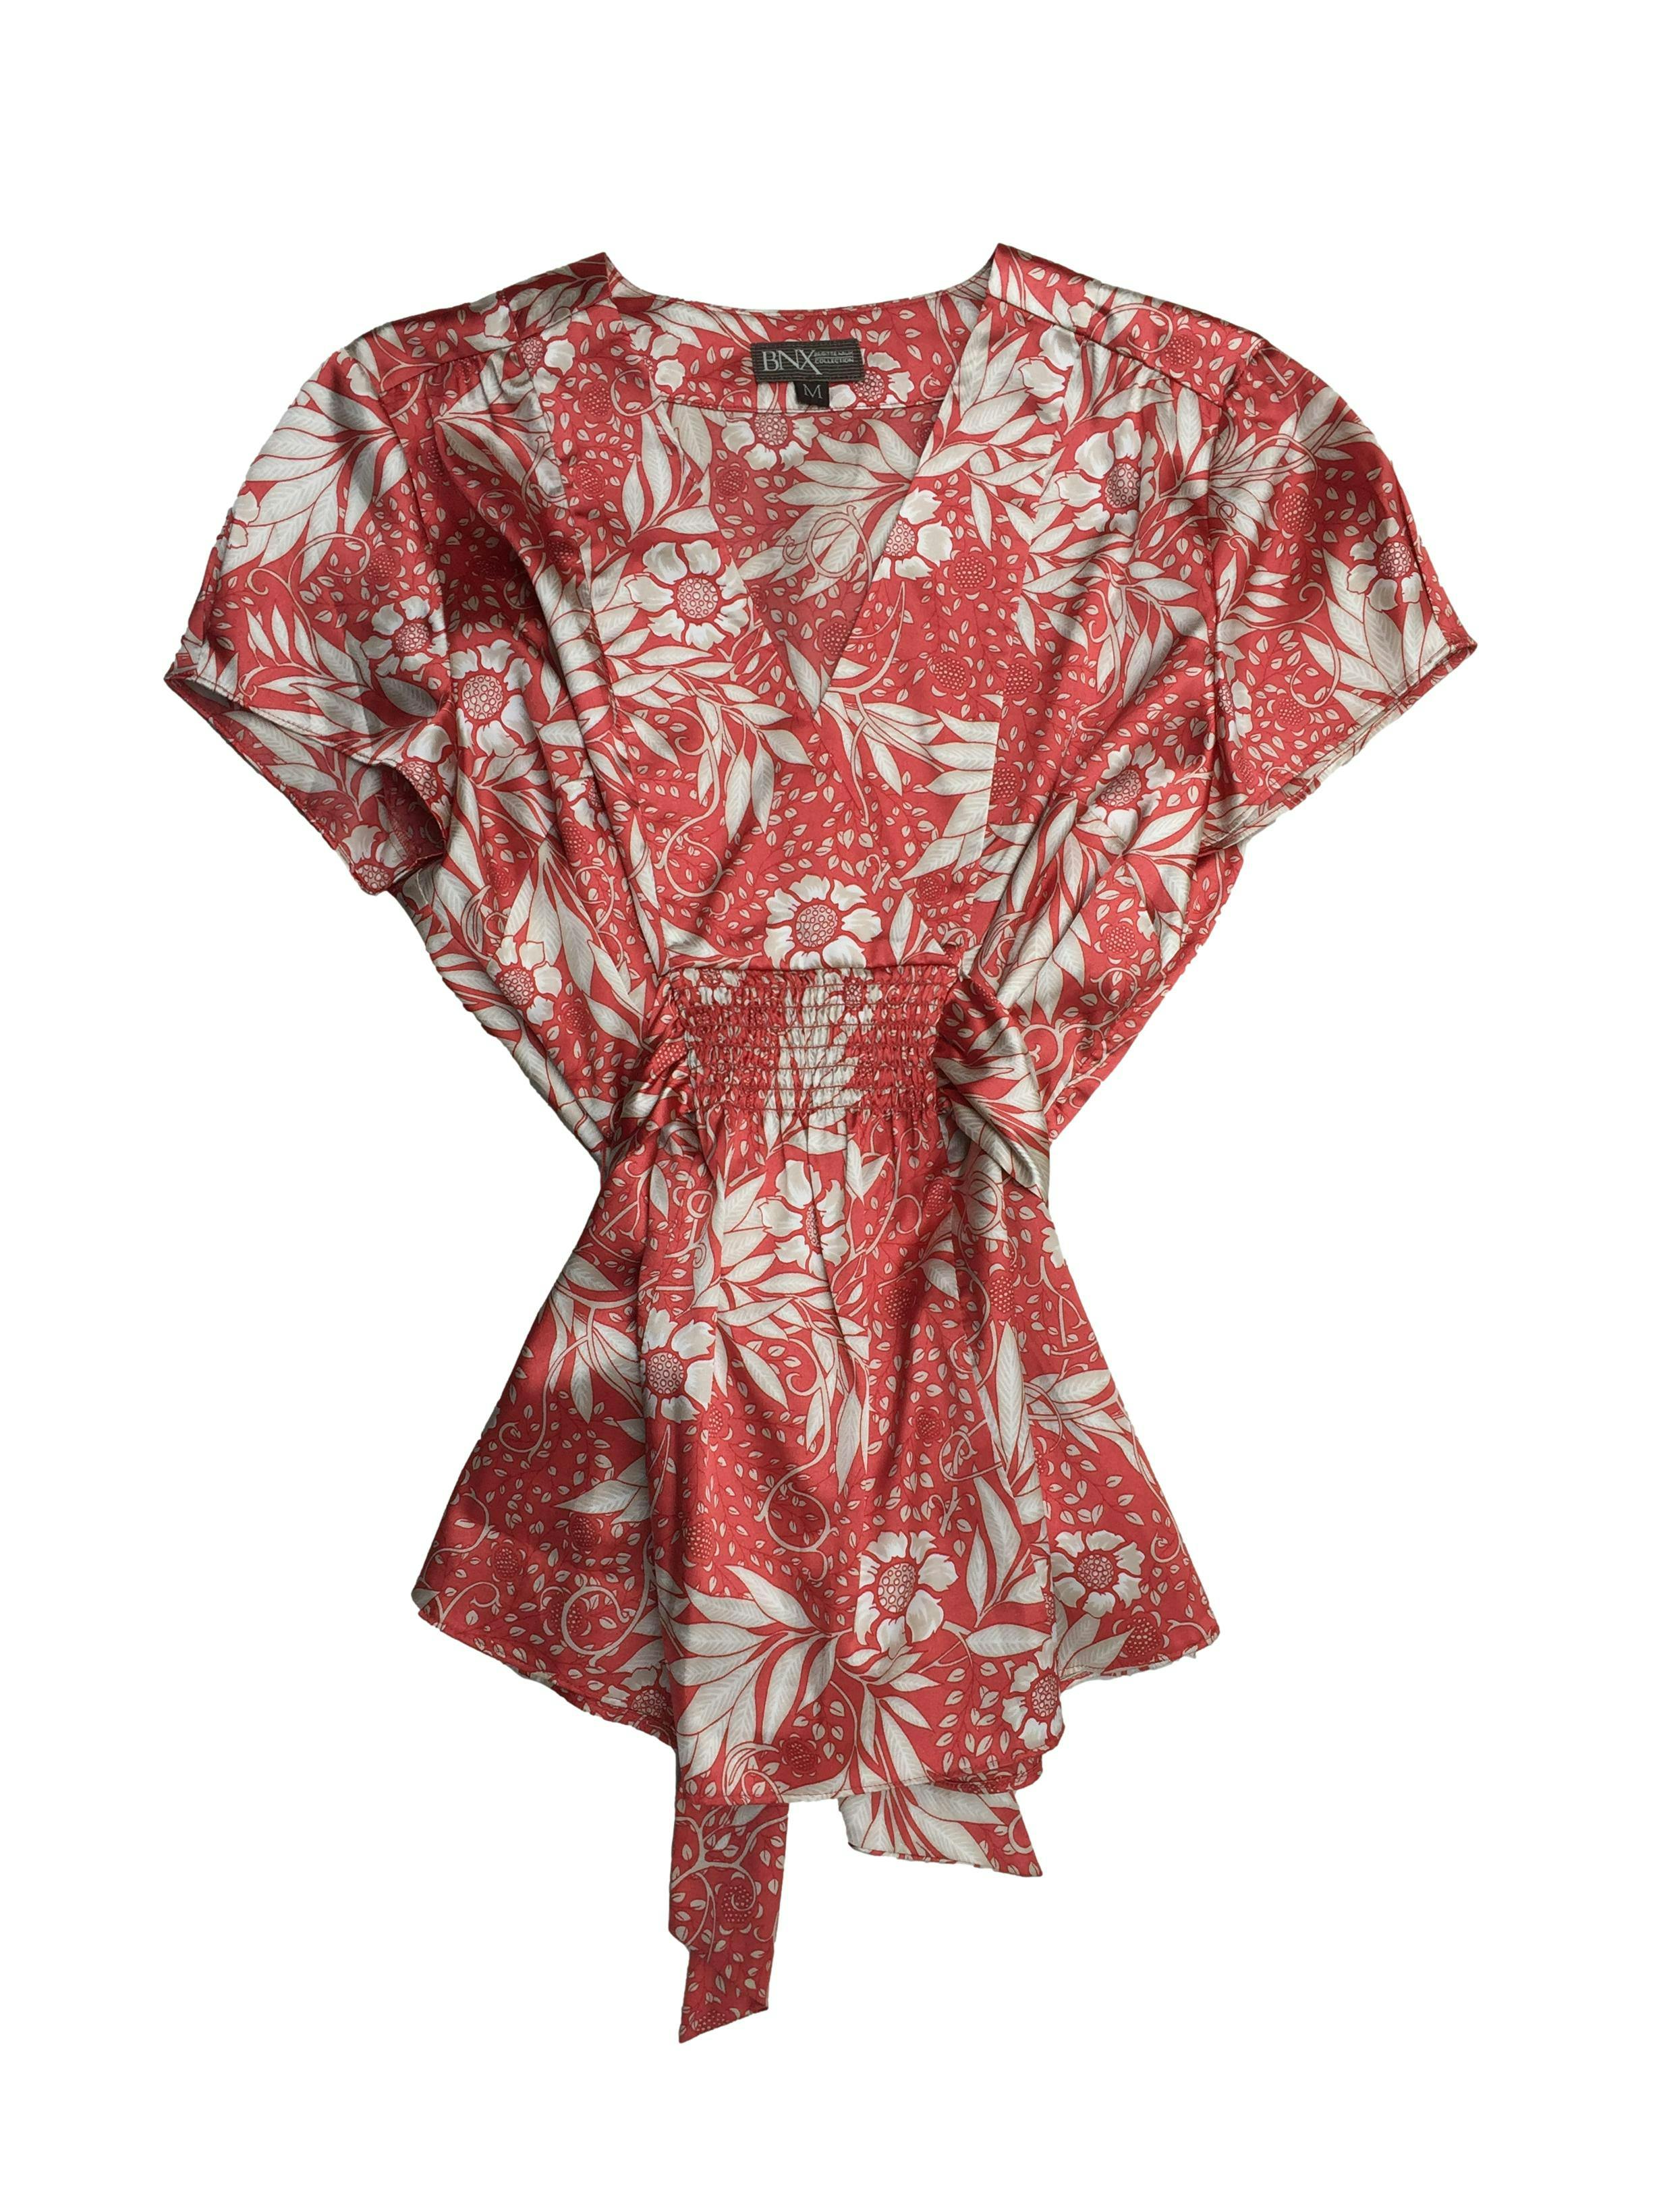 Blusa Brigitte Naux de satén coral con flores blancas, escote en V con cintos y panal de abeja en cintura, cierre lateral invisible. Busto 100cm, Largo 62cm.